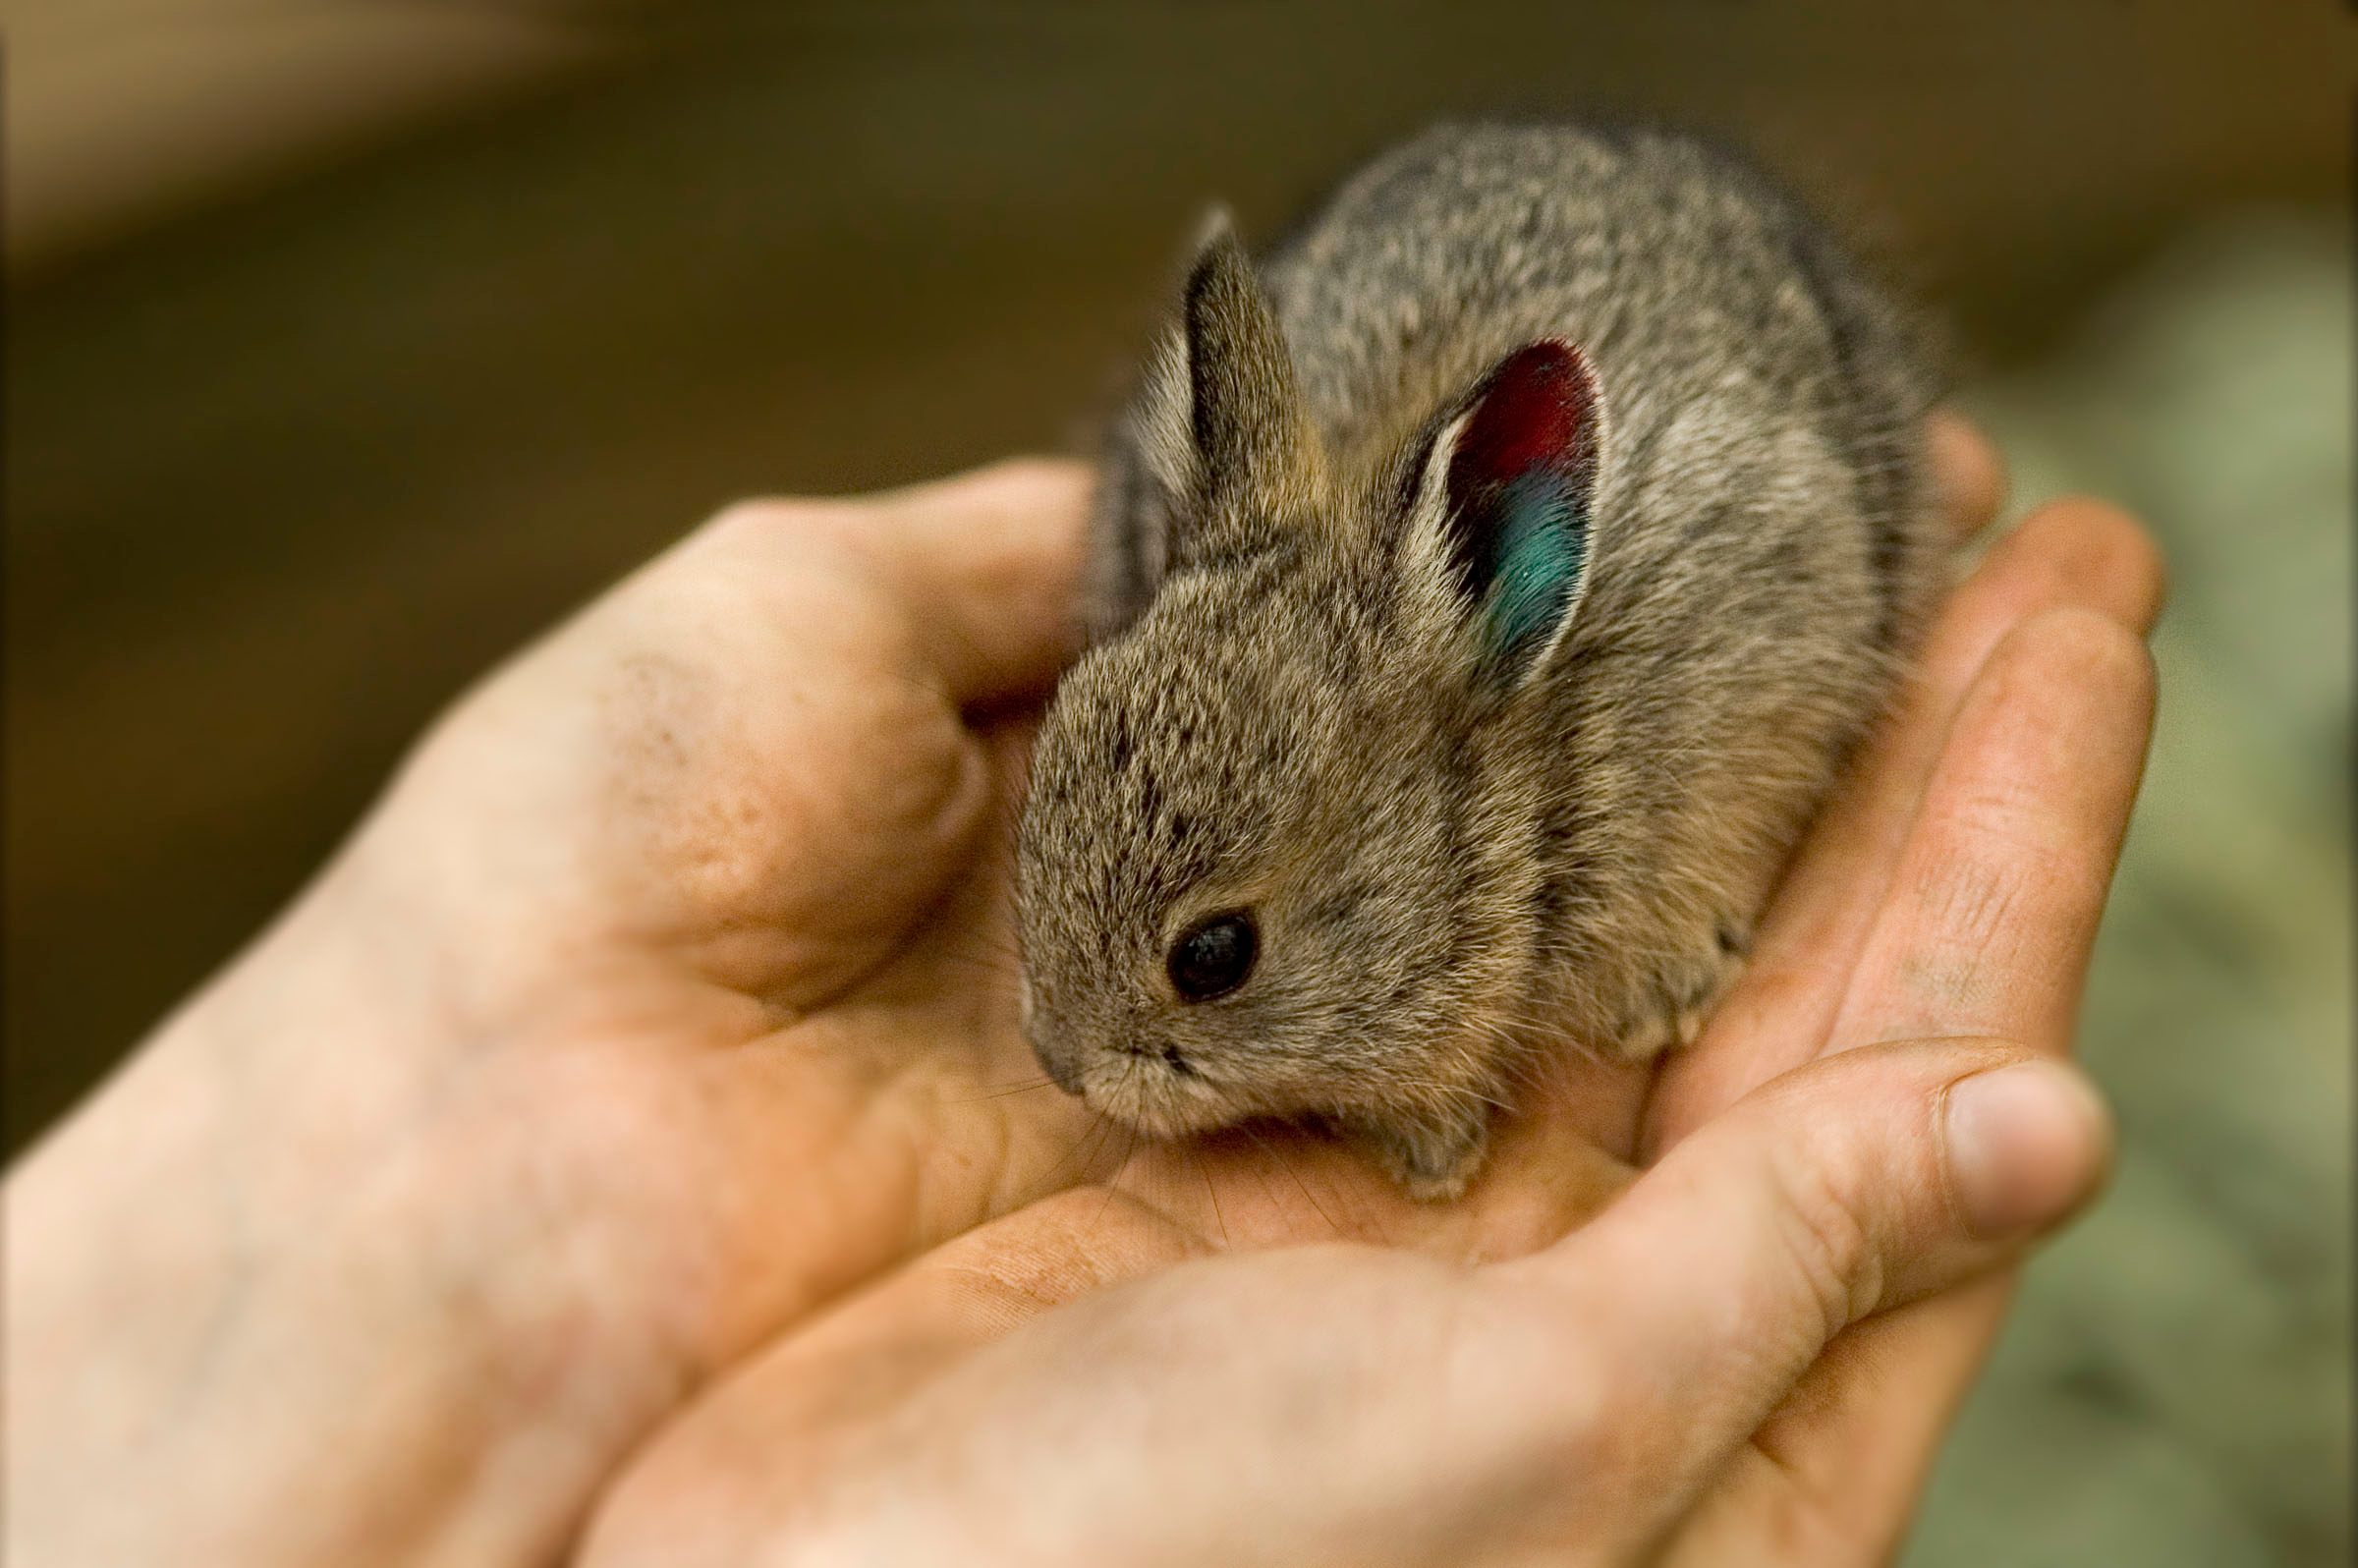 Большие и маленькие кролики. Айдахский кролик Пигмей. Айдахский кролик, кролик-Пигмей. Кролик-Пигмей самый маленький кролик в мире. Айдахский карликовый кролик.